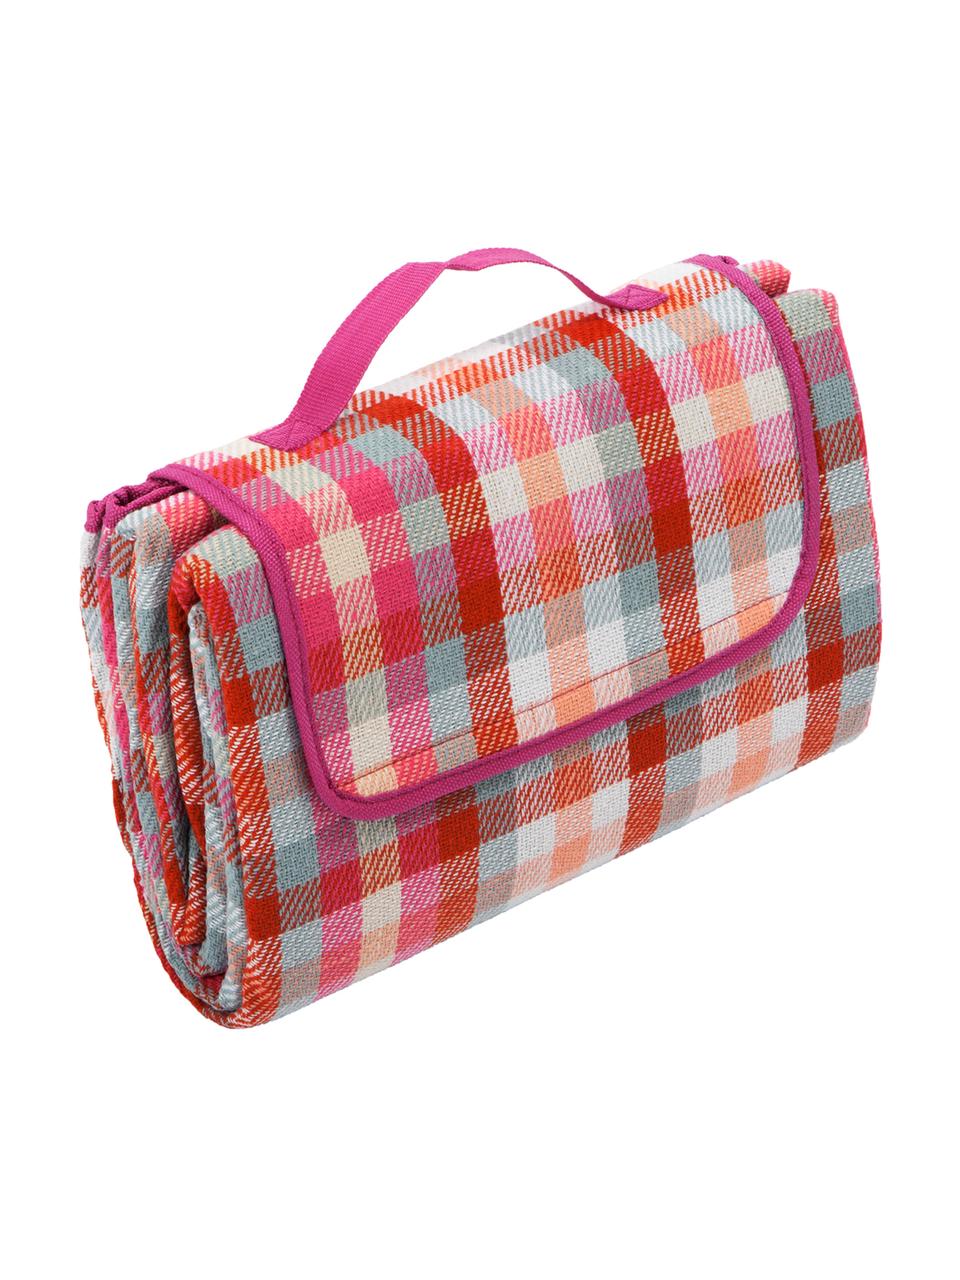 Picknick-Decke Clear, Vorderseite: Kunstfaser, Rückseite: Kunststoff, Rot, Weiss, Pink, Mint, Pfirsichfarben, 130 x 170 cm